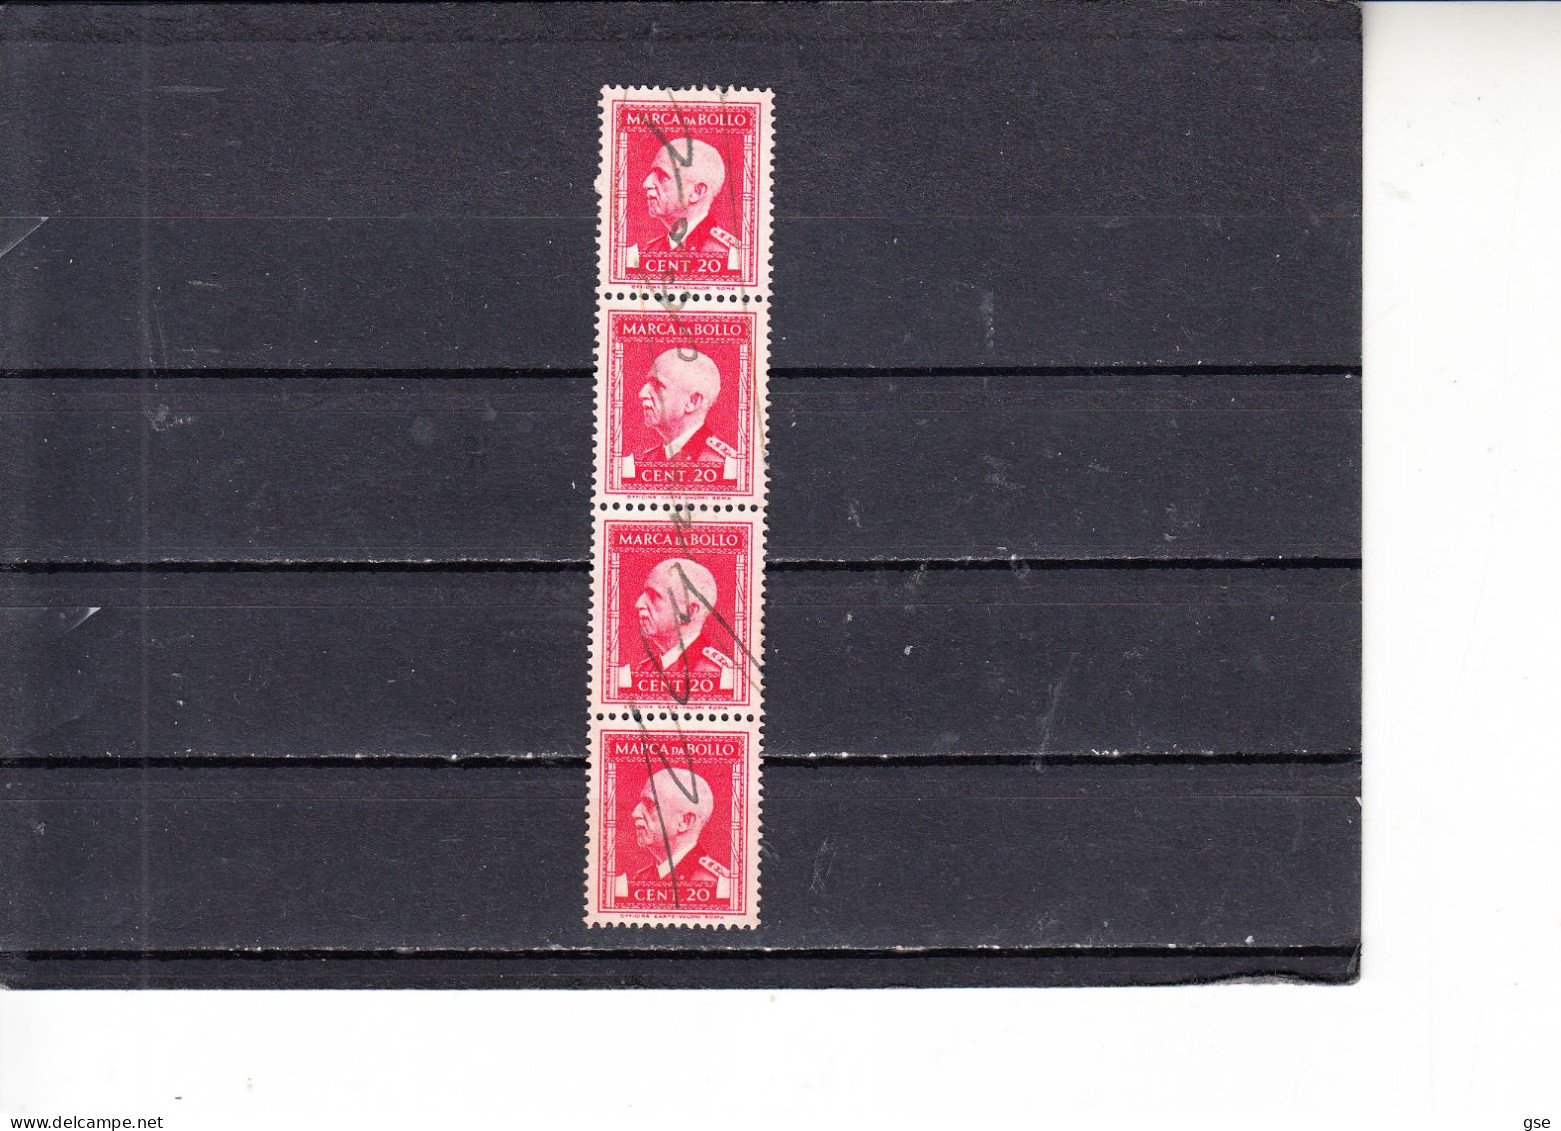 ITALIA  1939  - Unificato  127°   (x 4) -marca Da Bollo - Revenue Stamps